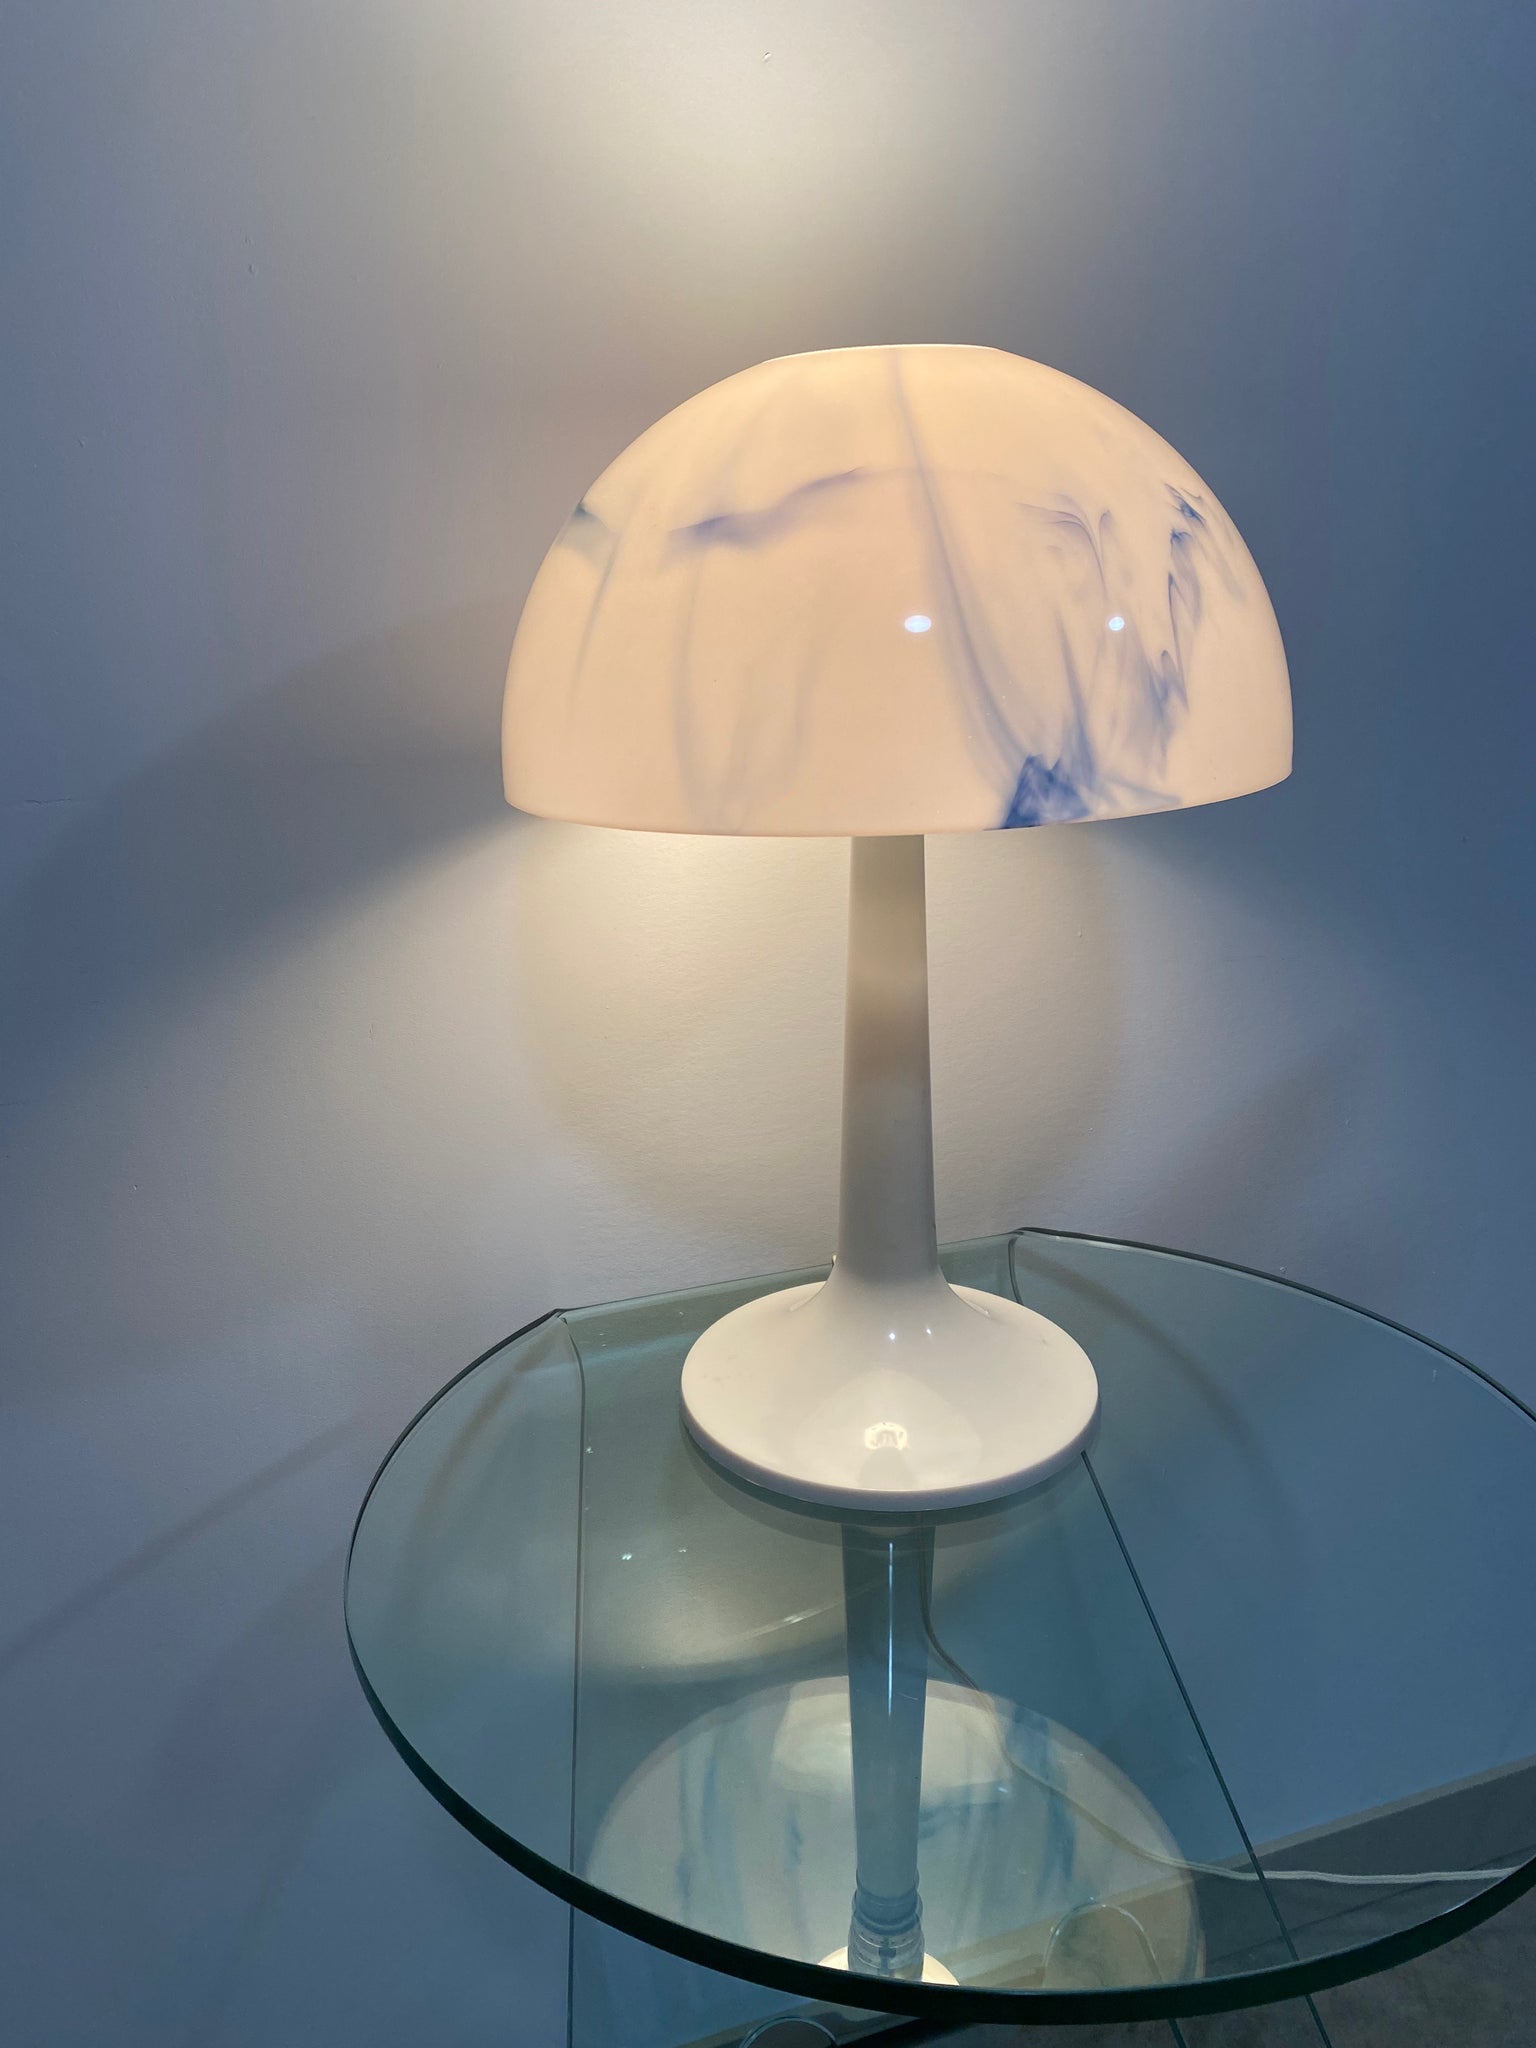 Blue marbled plastic mushroom lamp